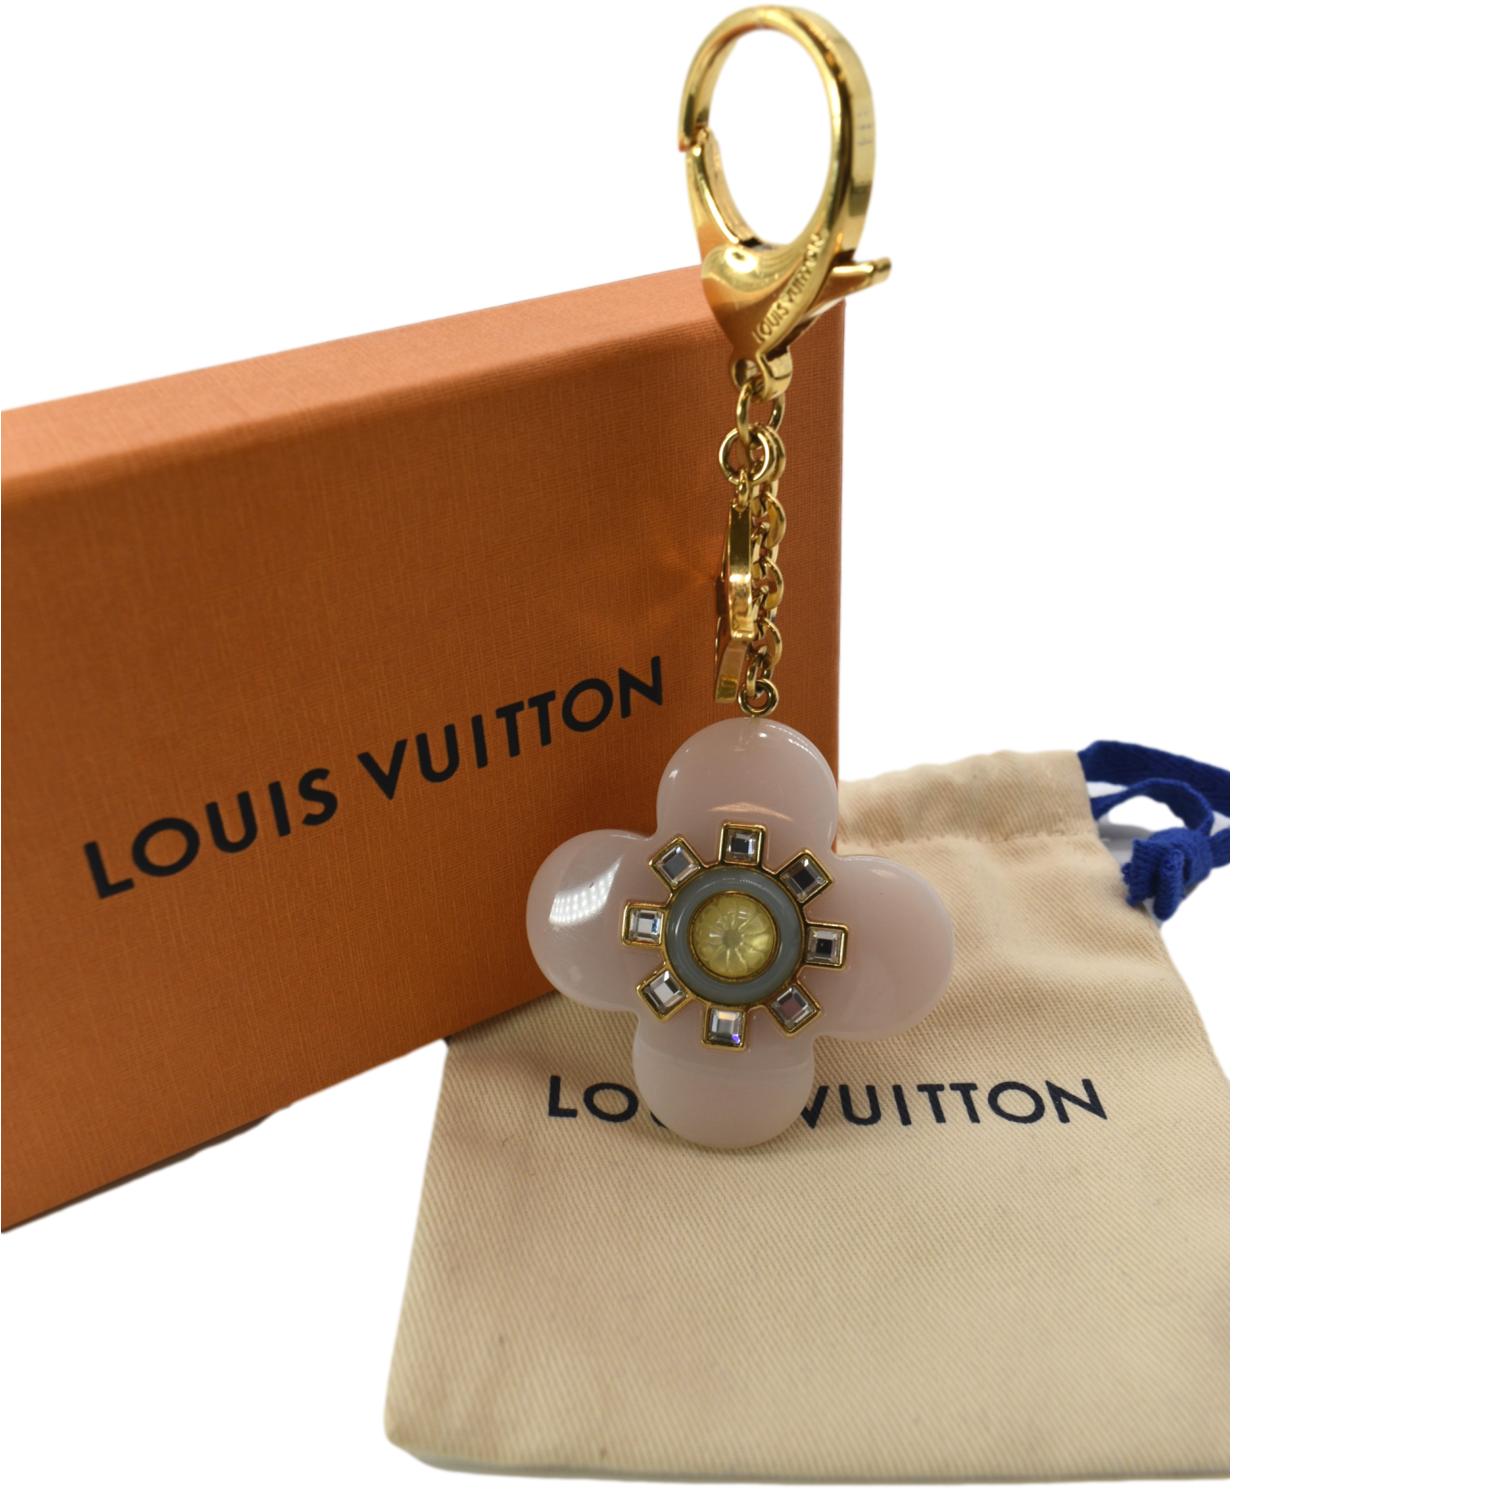 Fleur Du Désert - Louis Vuitton ®